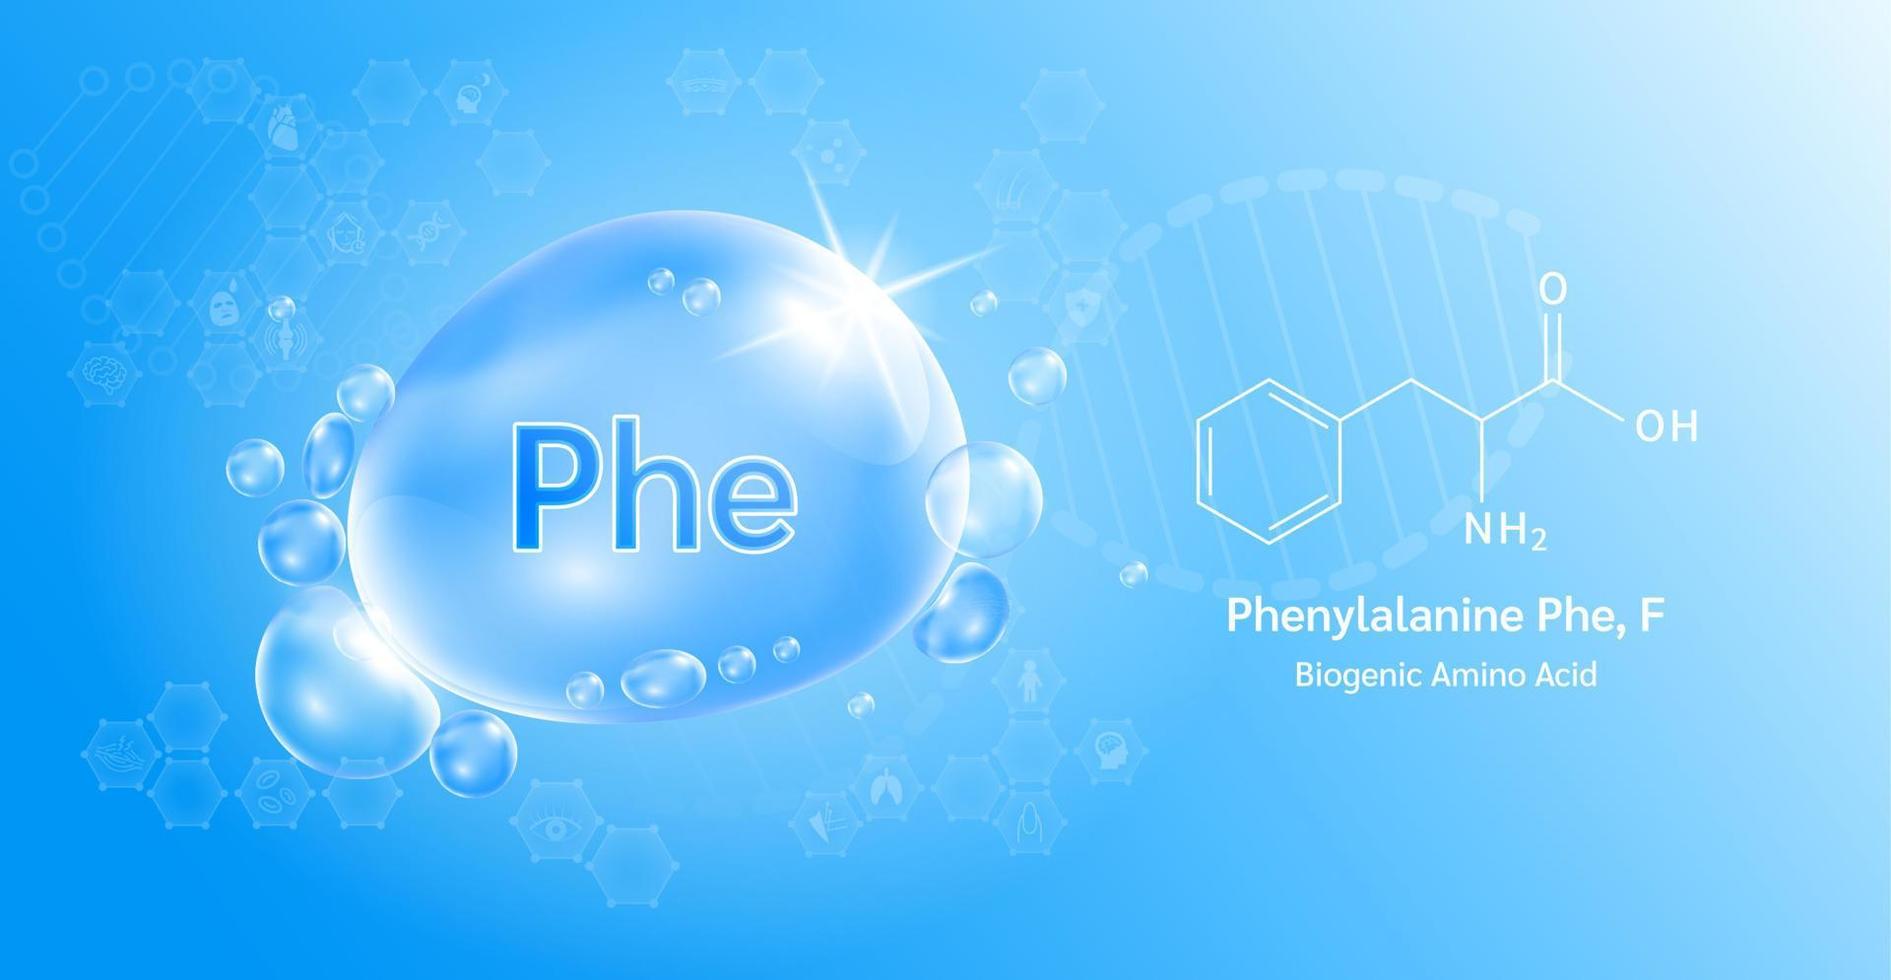 wassertropfen wichtige aminosäure phenylalanin phe, f und chemische strukturformel. Lysin auf blauem Hintergrund. medizinische und wissenschaftliche Konzepte. 3D-Vektor-Illustration. vektor